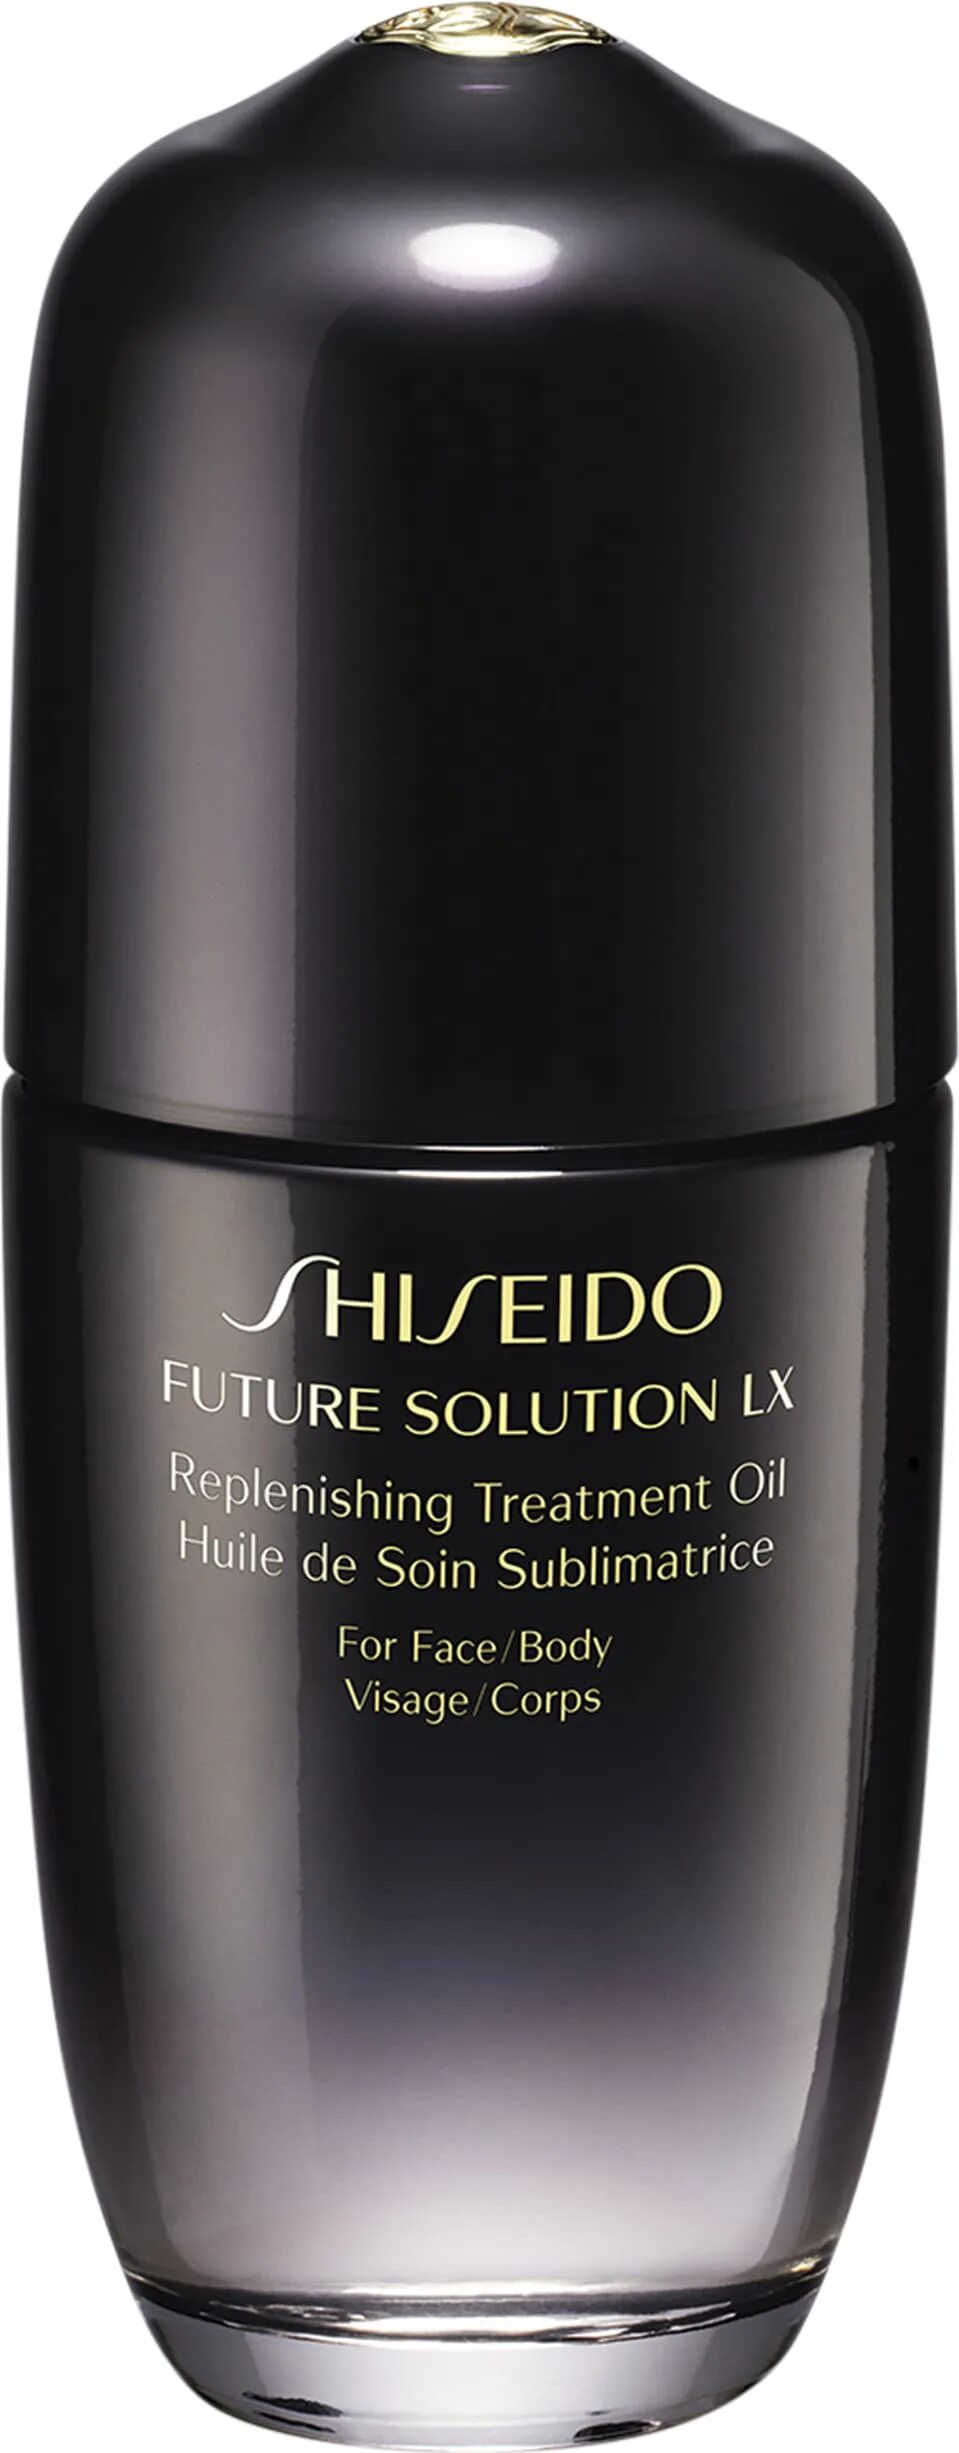 Shiseido Future solution LX масло. Универсальное питательное масло Shiseido. Shiseido Future solution LX Oil купить. Масло Shiseido Future solution LX отзывы. Shiseido oil